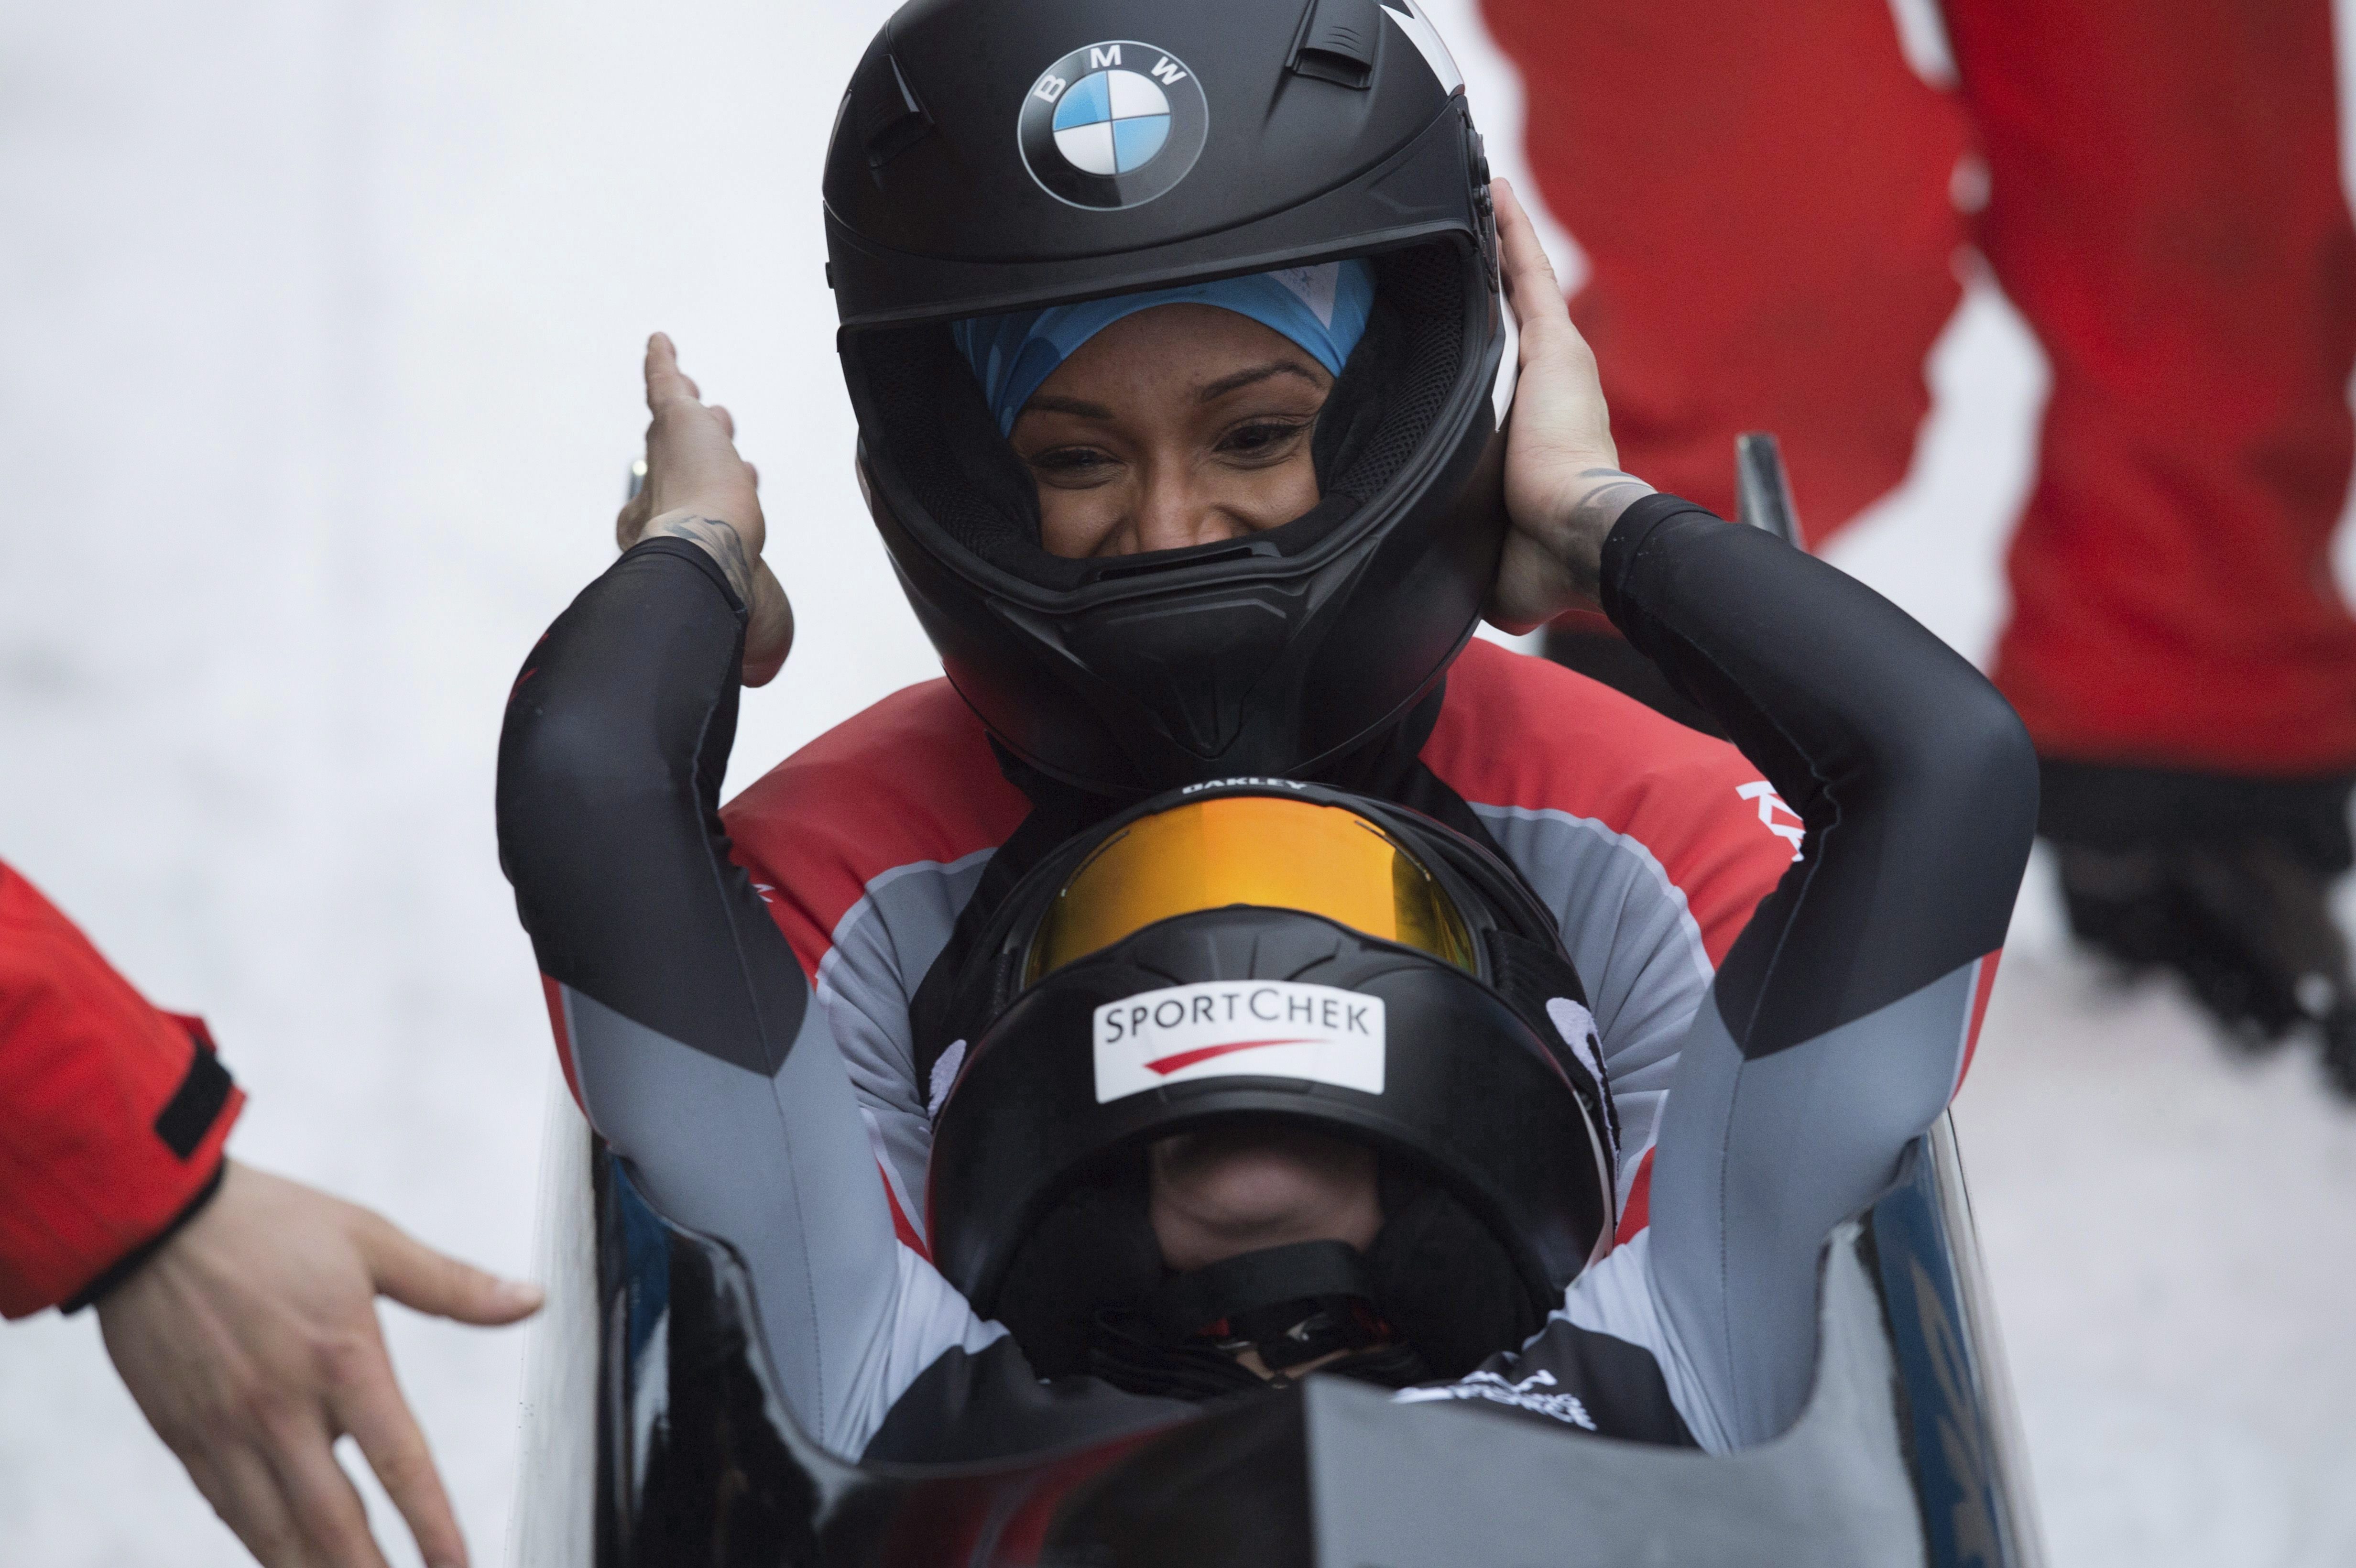 Kaillie Humphries (pilote) et Phylicia George d'Équipe Canada célèbrent au fil d'arrivée de la Coupe du monde bobsleigh Altenberg, en Allemagne, le 6 janvier 2018. (Sebastian Kahnert/dpa via AP)